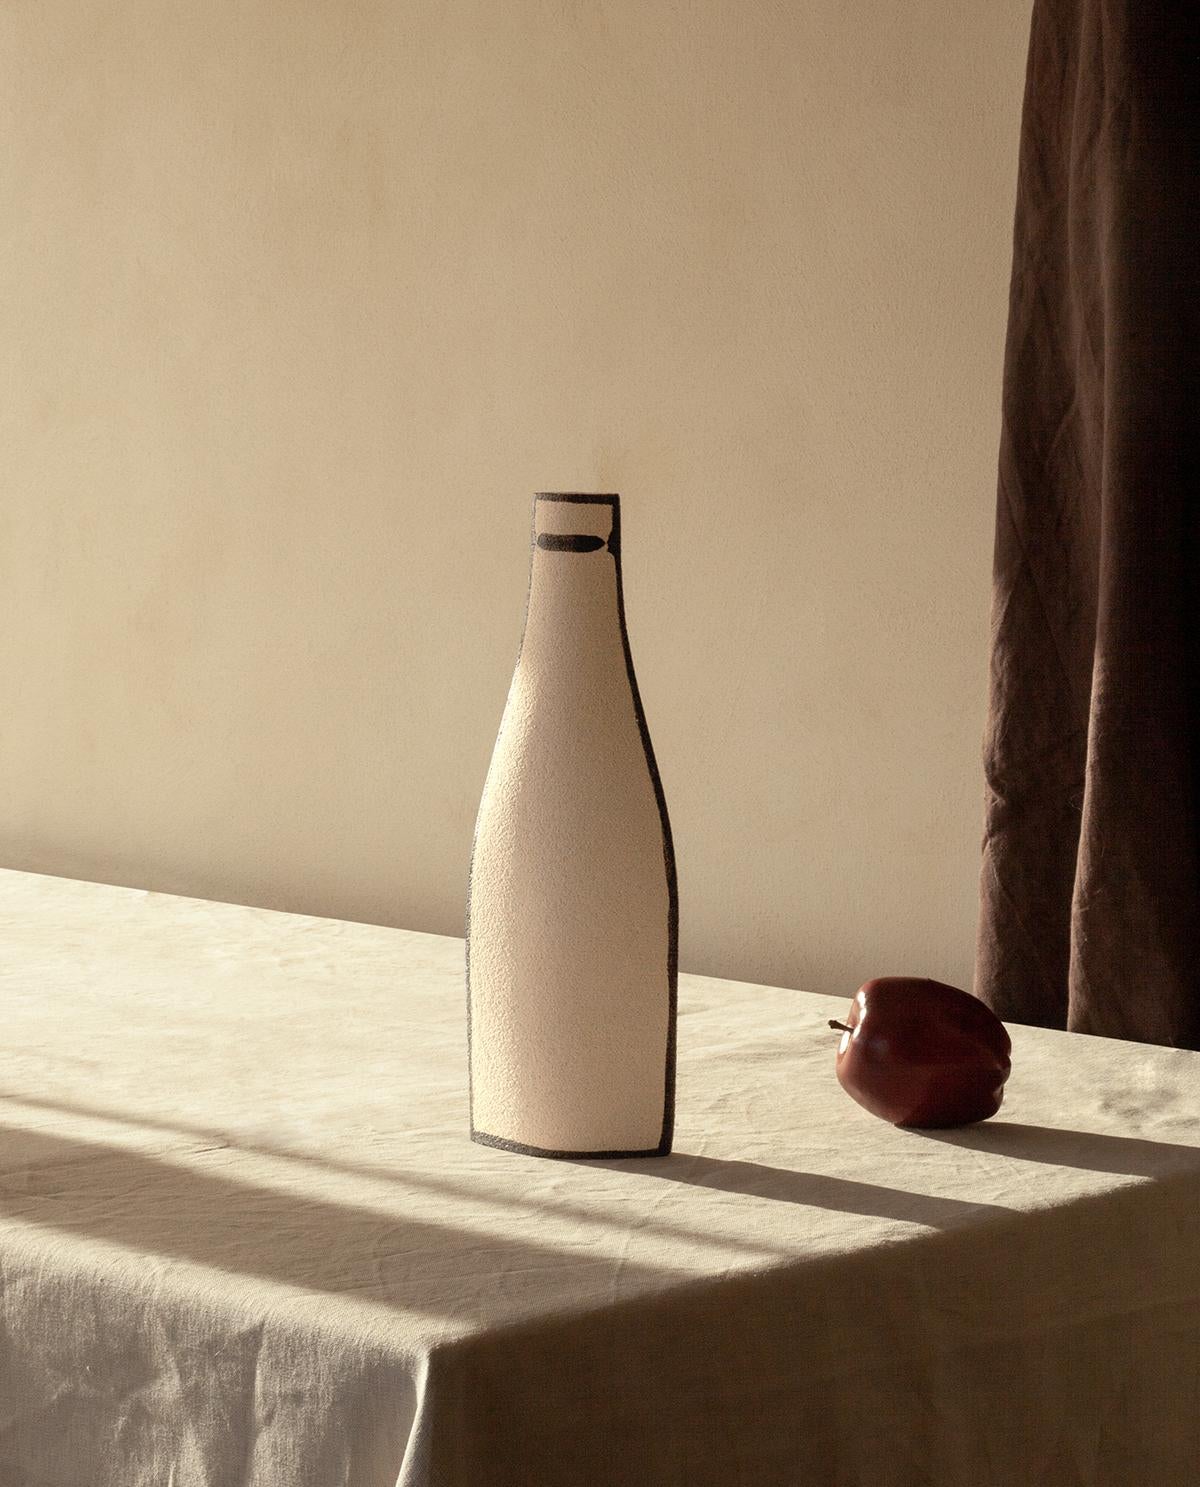 Wir freuen uns, Ihnen die erste Ergänzung der INI CERAMIQUE Kollektion 2024 vorstellen zu können. Inspiriert von den Werken des Malers Giorgio Morandi, hat unsere Designerin diese Vasen mit ihrem eigenen Gefühl neu interpretiert und gestaltet. Die